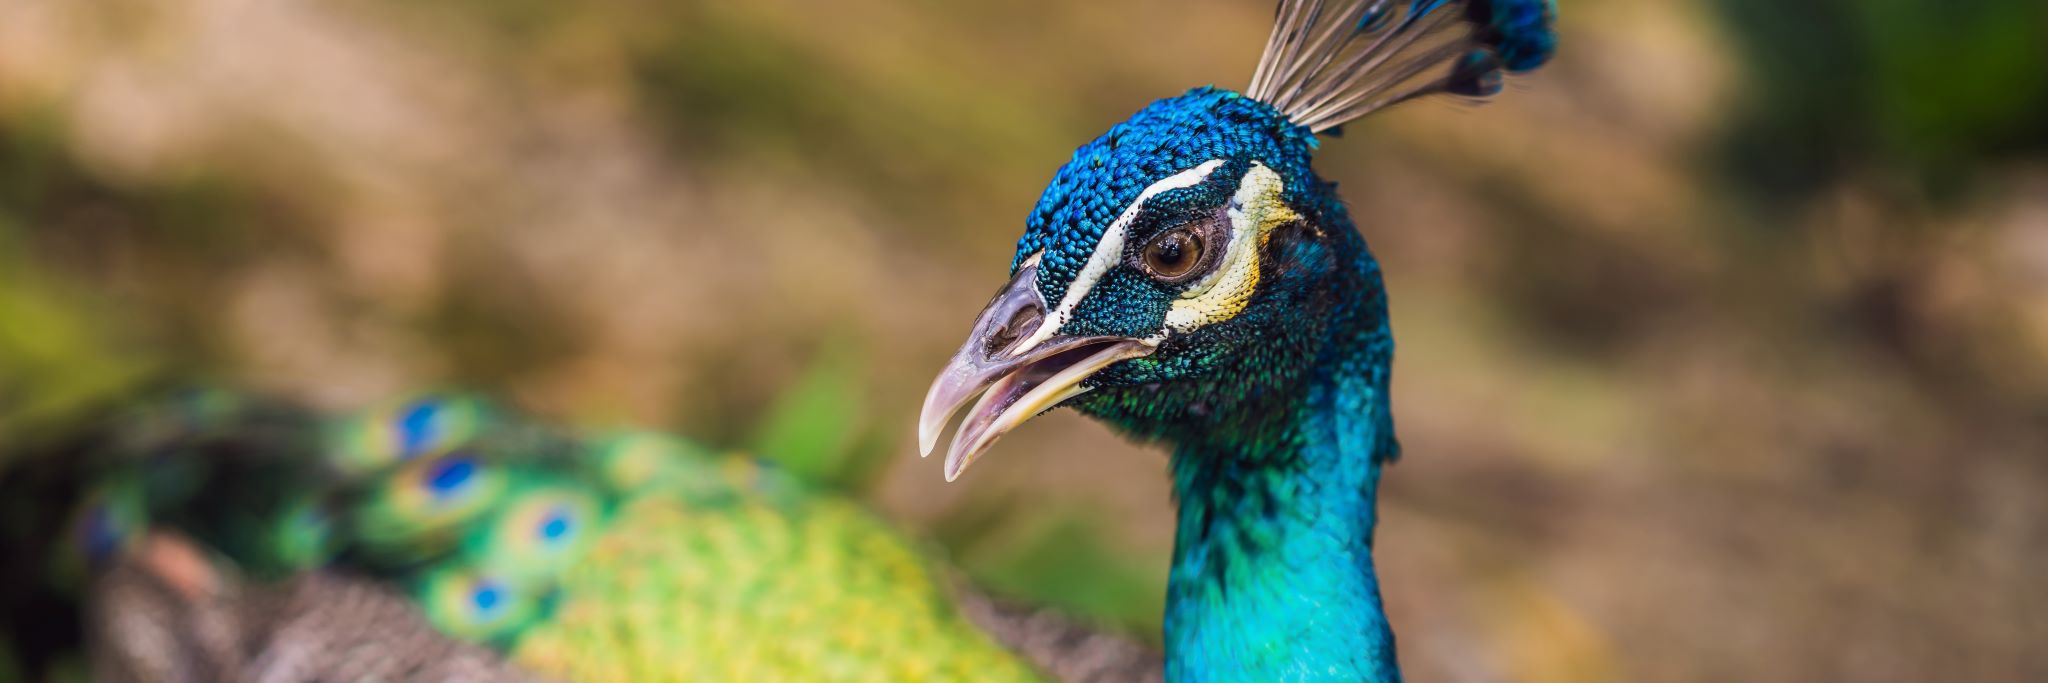 Closeup portrait of beautiful blue ribbon peacock.